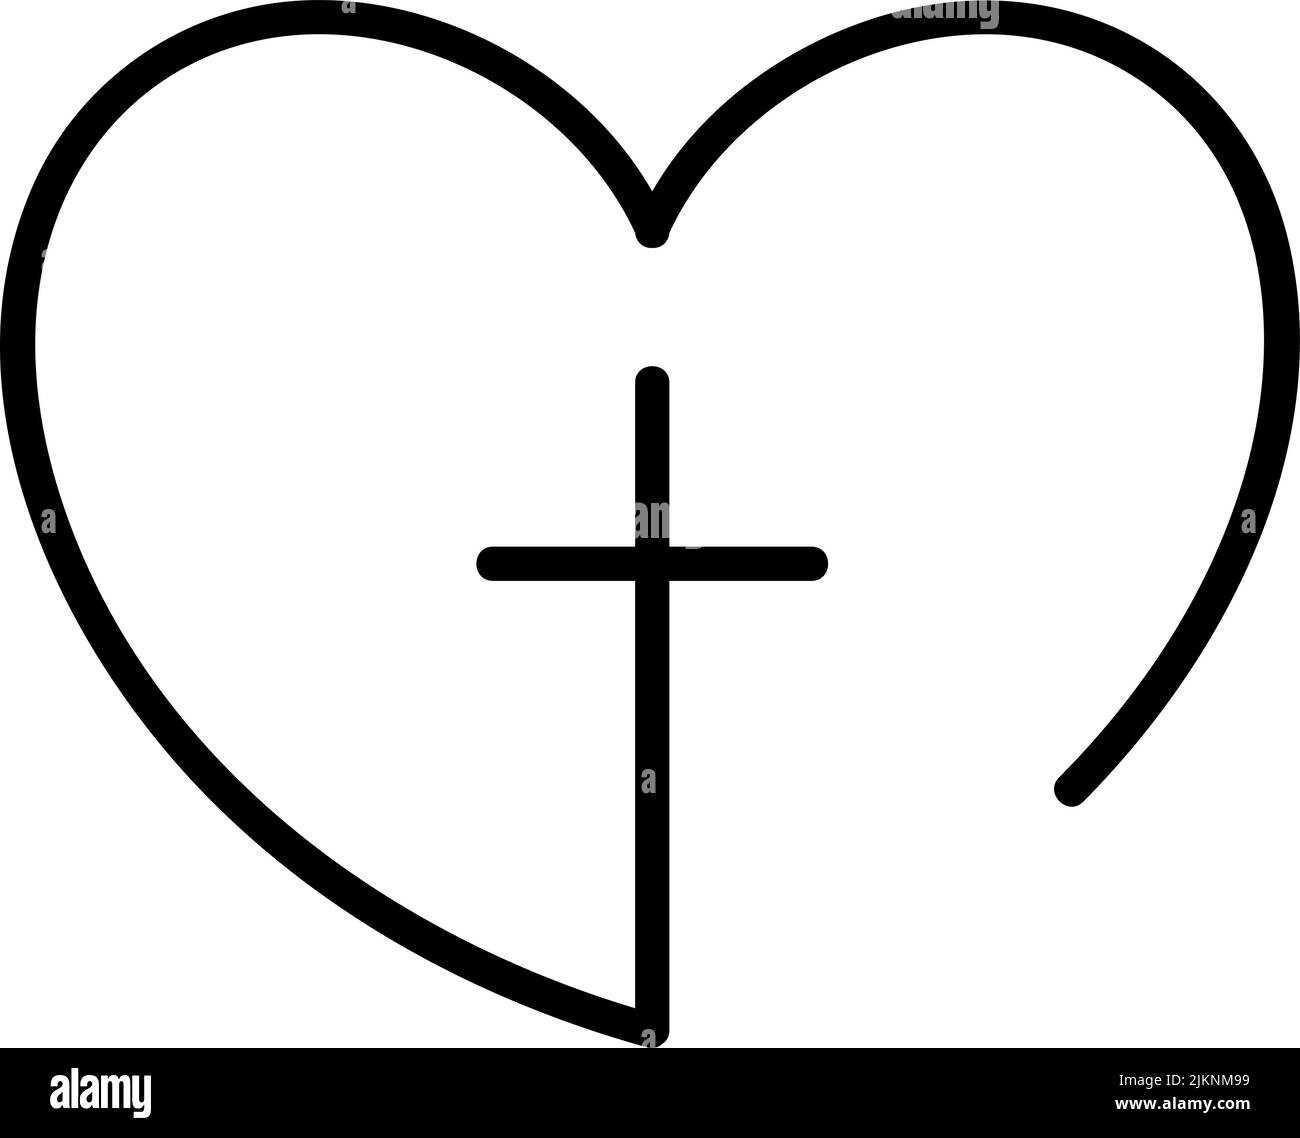 Abstrakte religiöse Kreuz-und Herz-Ikone. Christian Love Logo. Monoline Vektorgrafik. Religiöse Gemeinschaft. Gestaltungselement für Plakat, Badge-Schild Stock Vektor